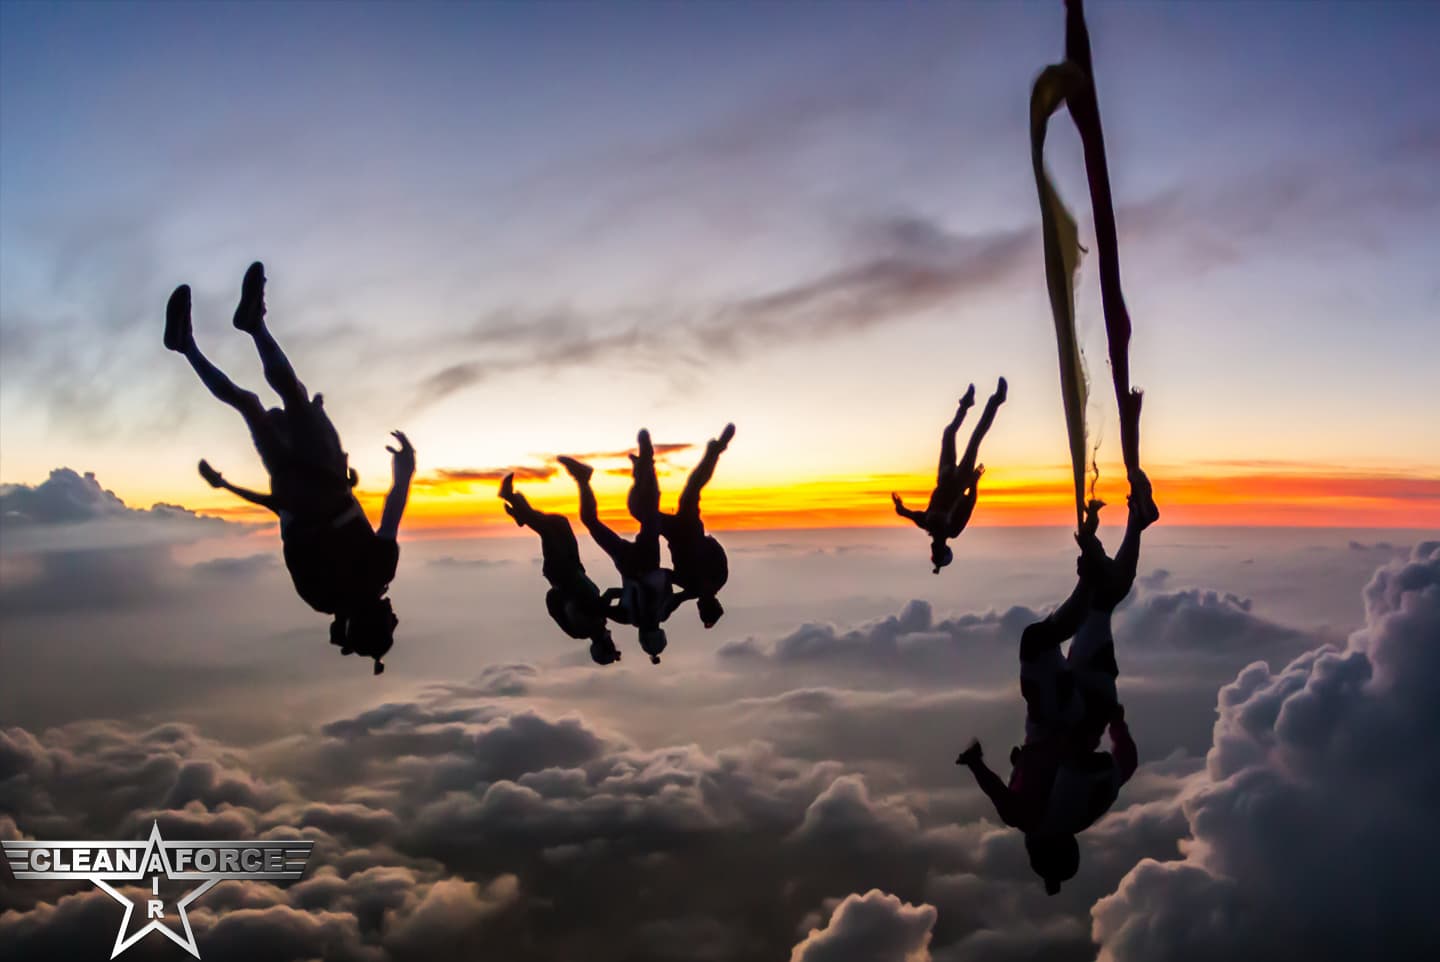 groupe de parachutistes en free fly au coucher du soleil dans le ciel bourguignon